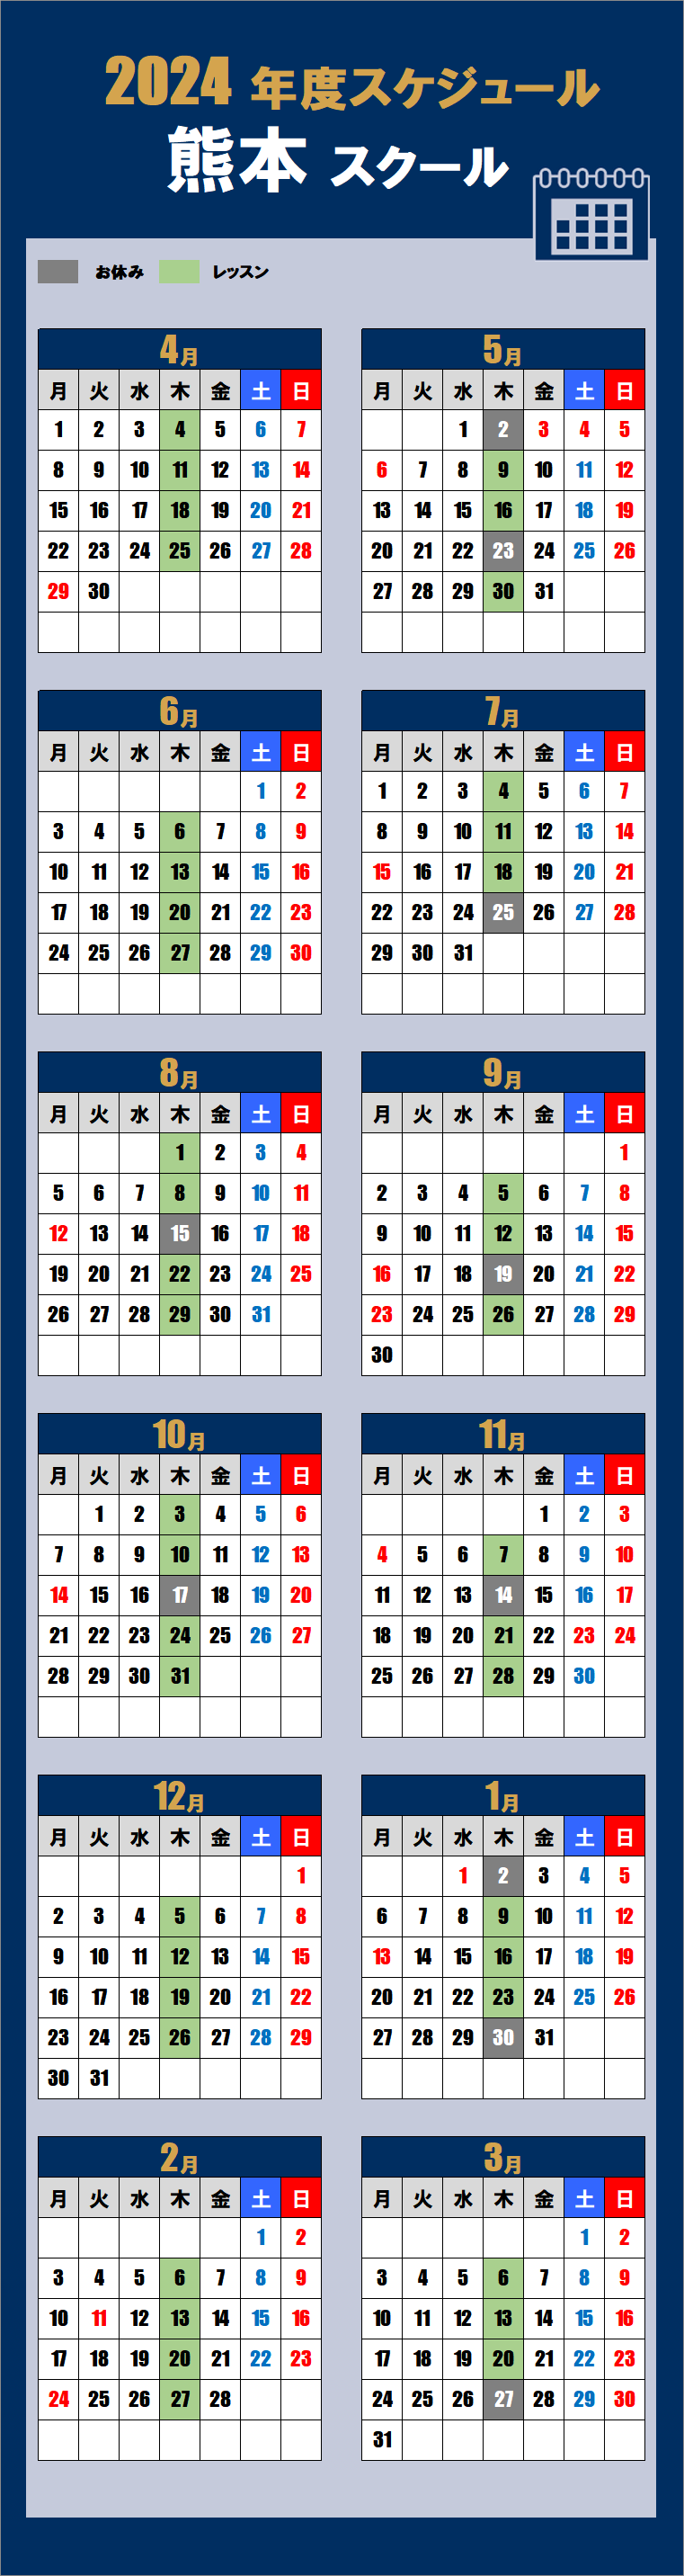 2024熊本スクールカレンダー